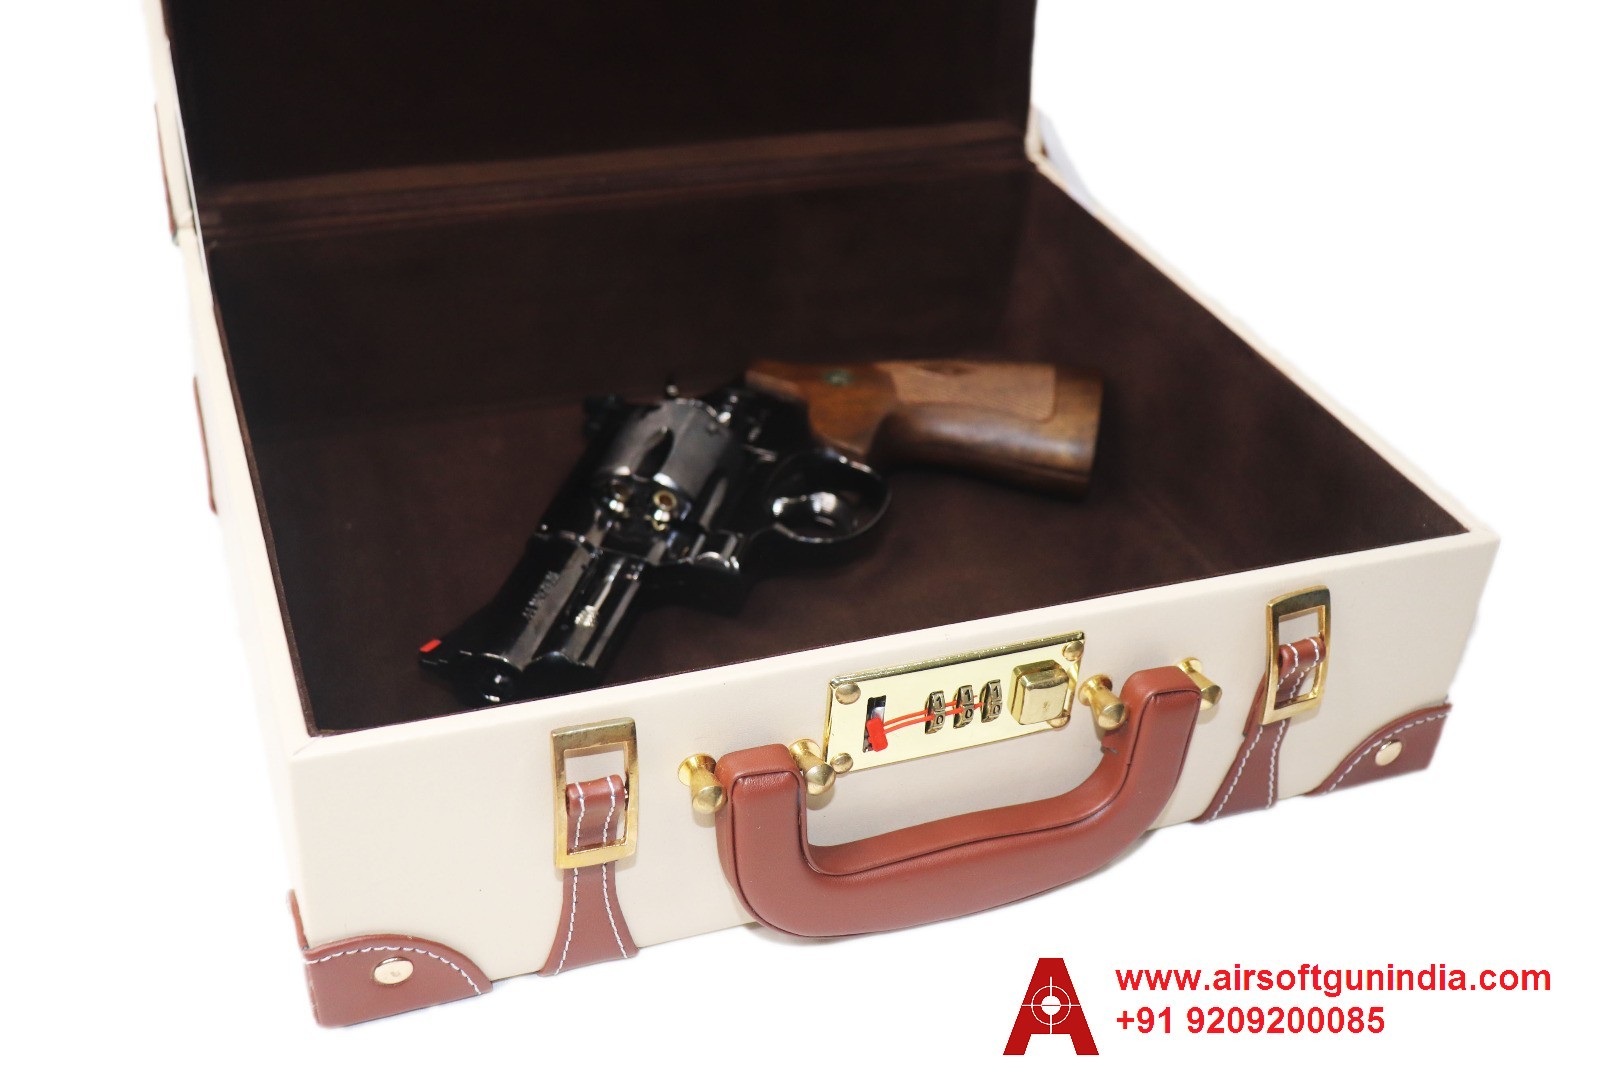 Vintage Retro Luxury Suitcase/Gun Box In Beige Shade By Airsoft Gun India